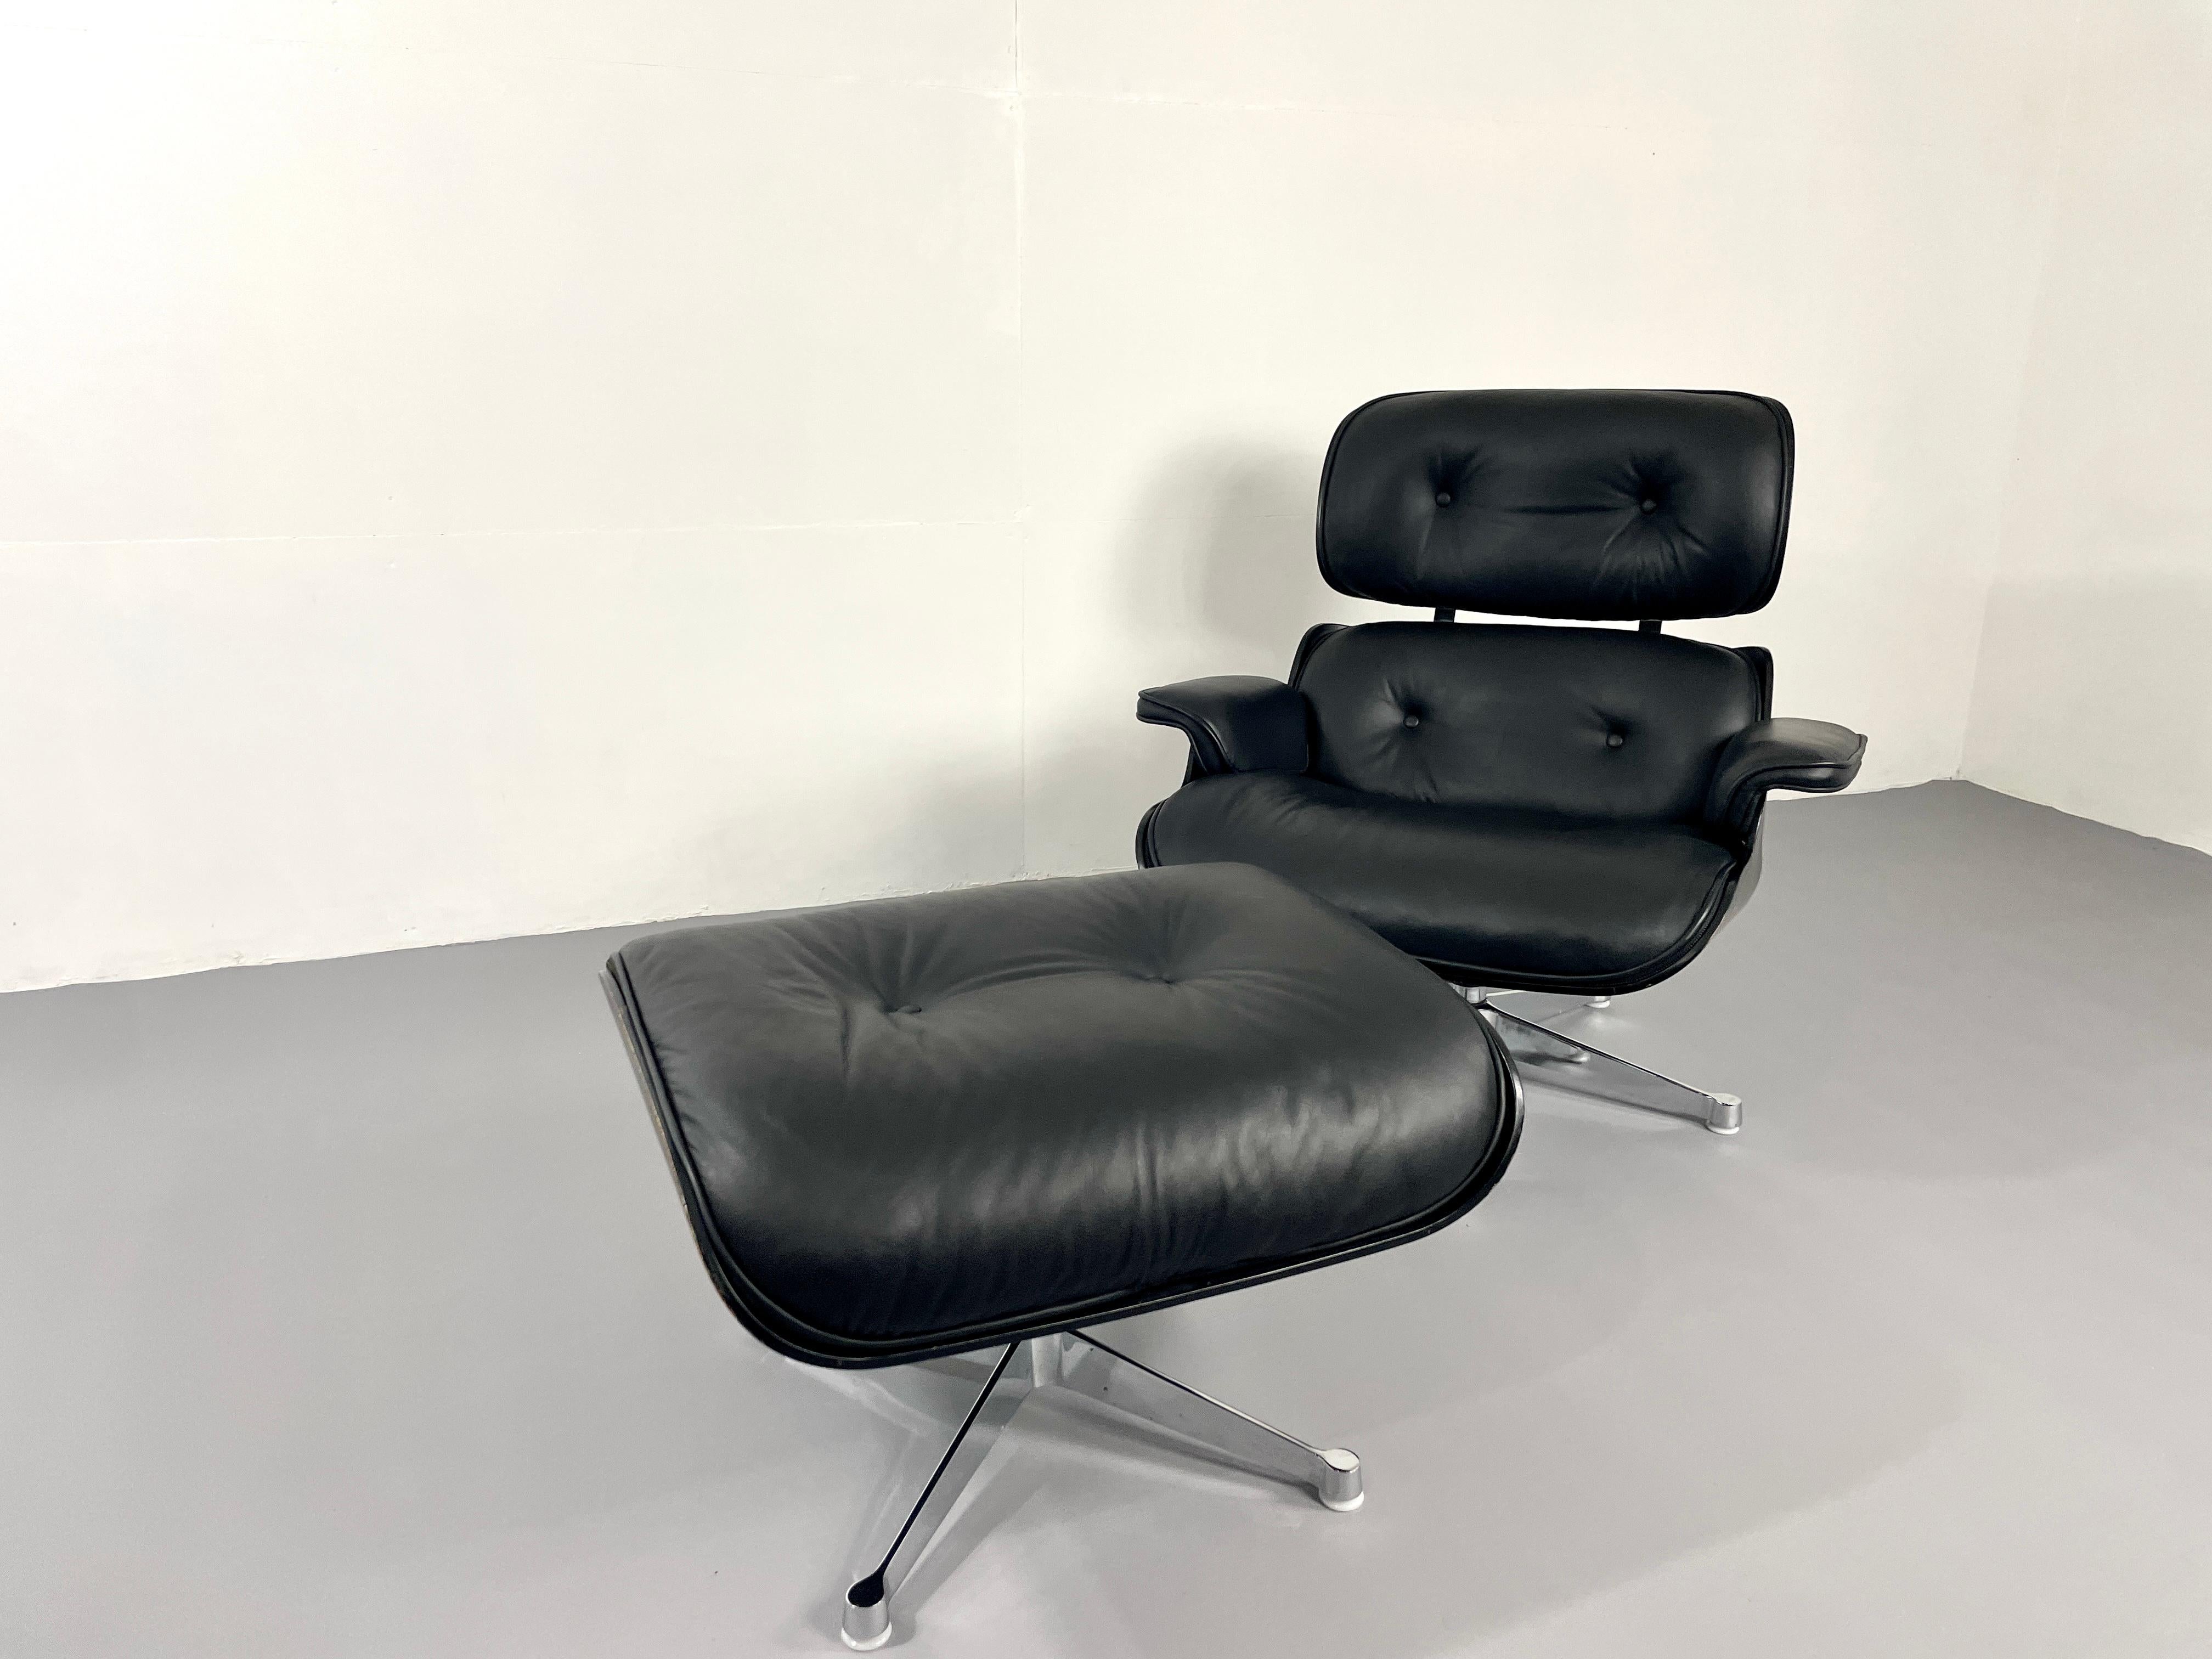 der ikonische Lounge-Sessel von Charles und Ray Eames. Dieses Symbol braucht nicht viele Worte. Es ist wahrscheinlich der berühmteste und gemütlichste Mid Century Sessel. Der Stuhl wurde von Herman Miller hergestellt. 
In der seltenen Version mit